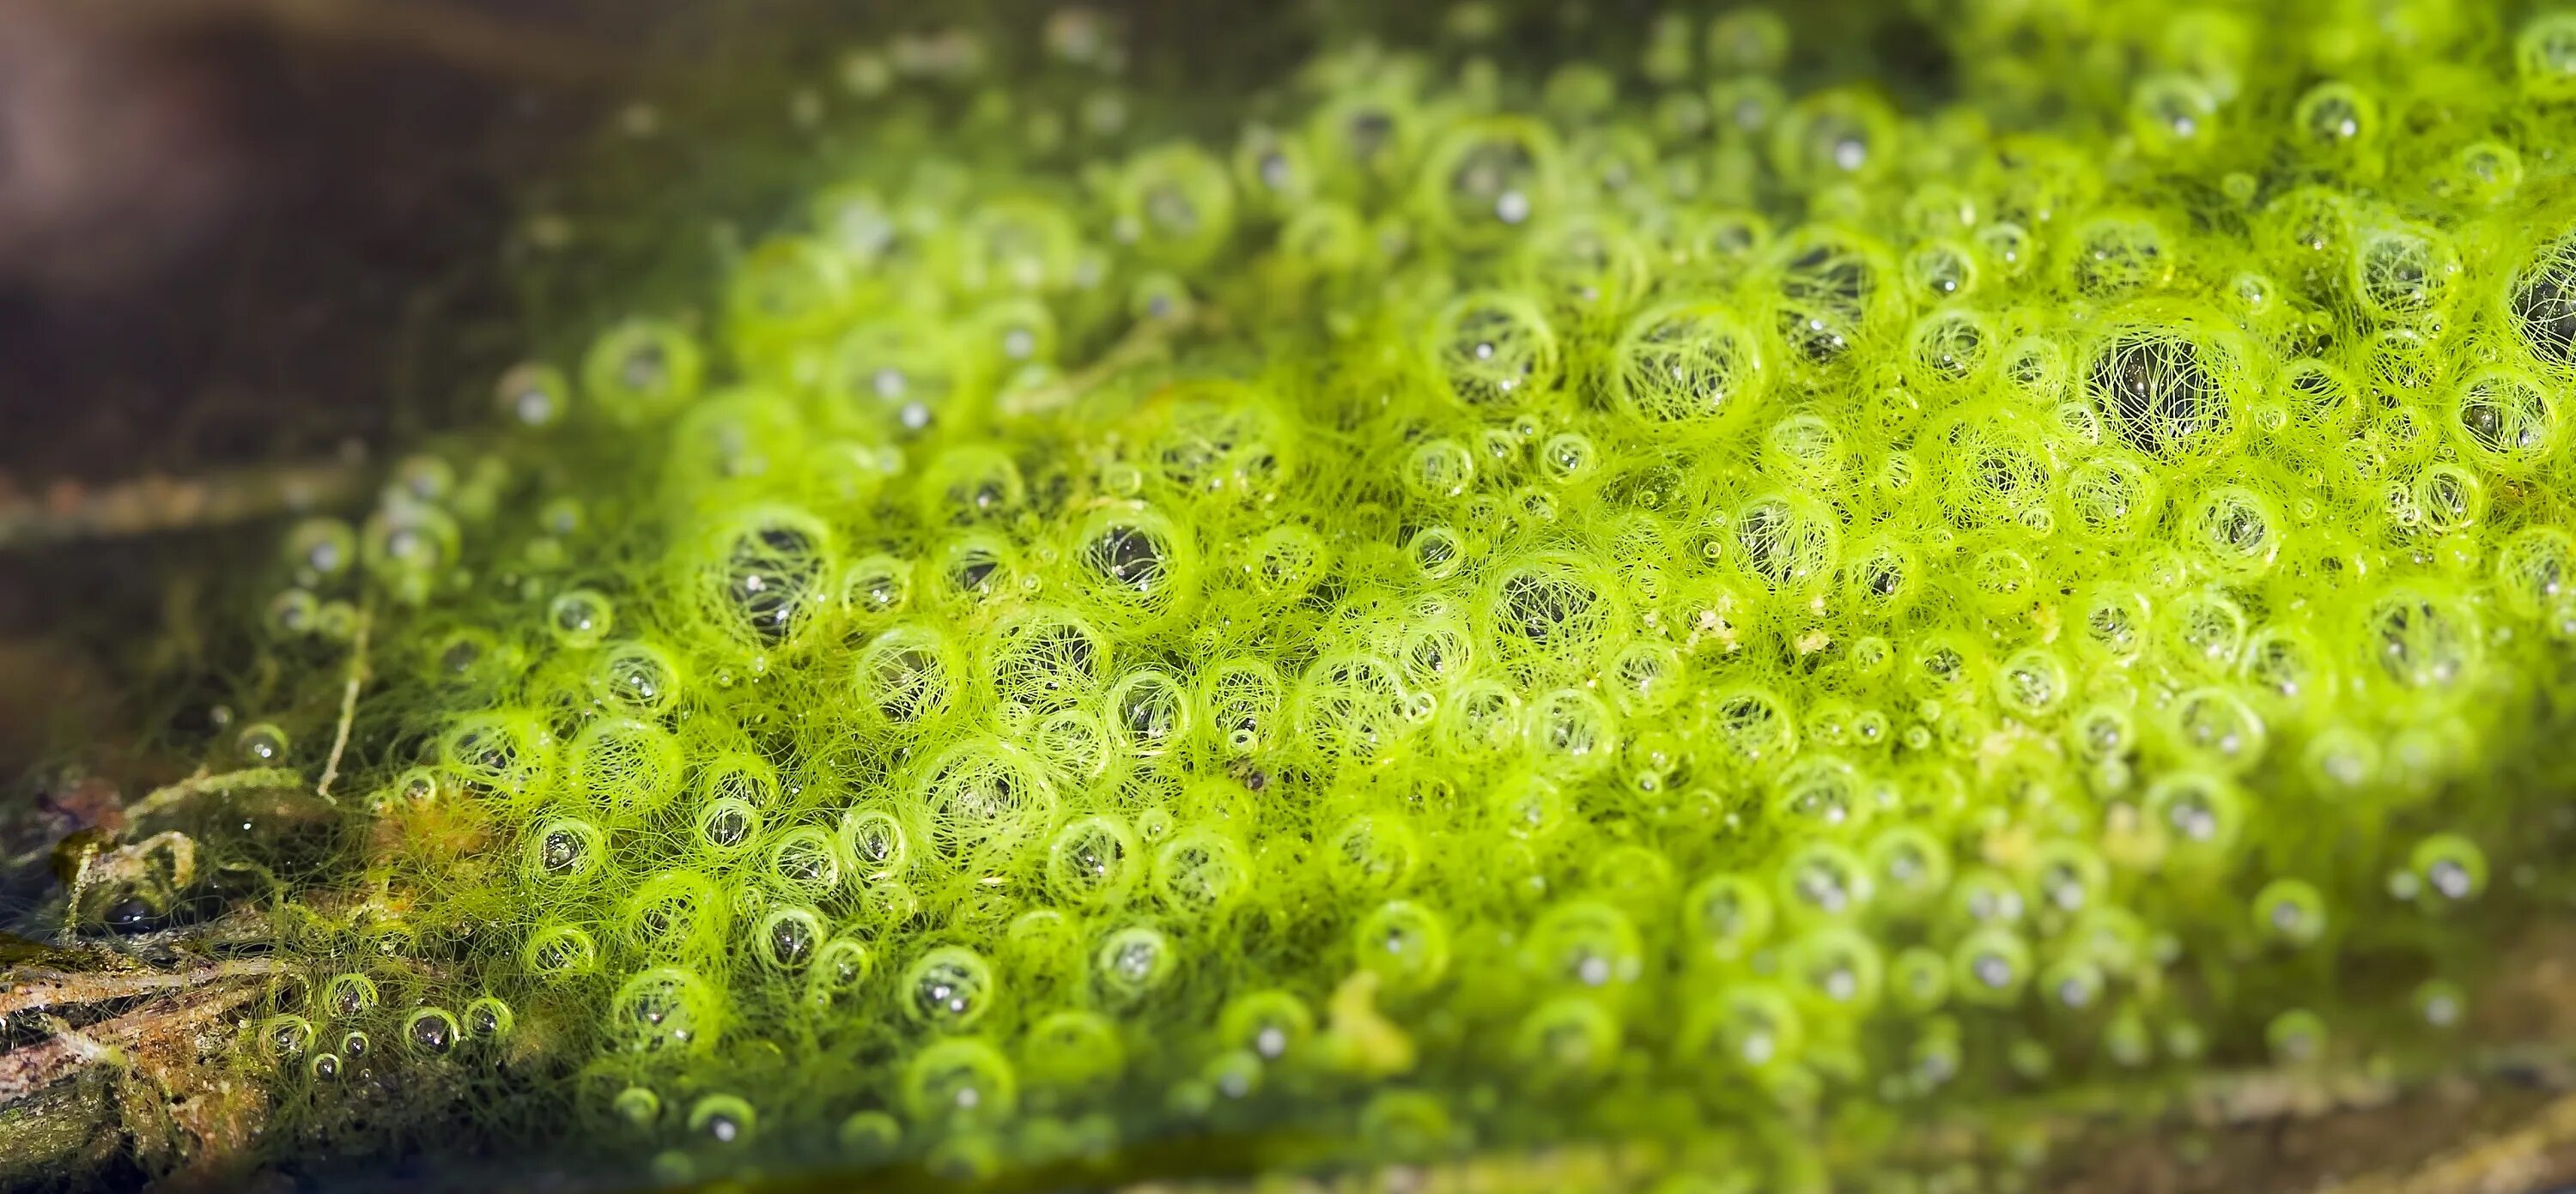 Водные растения пузырьки. Вольвокс кладофора. Вольвокс водоросль. Зеленые водоросли Chlorophyta. Одноклеточные водоросли фототрофы.